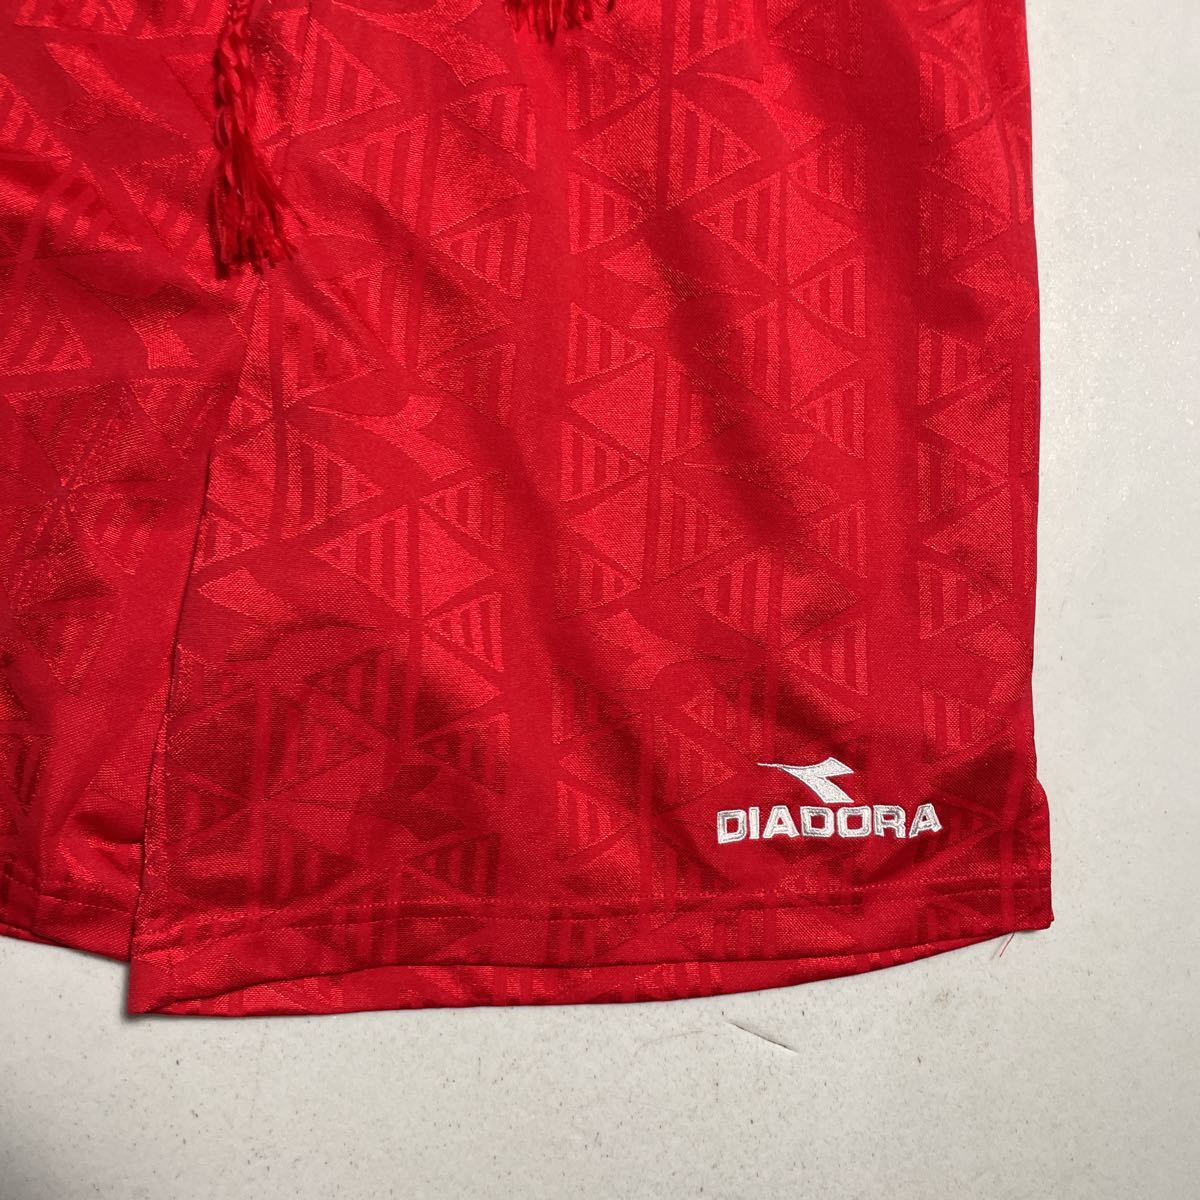 ディアドラ DIADORA 赤 レッド 刺繍ロゴ サッカー トレーニング用 サッカーパンツ Lサイズ_画像3